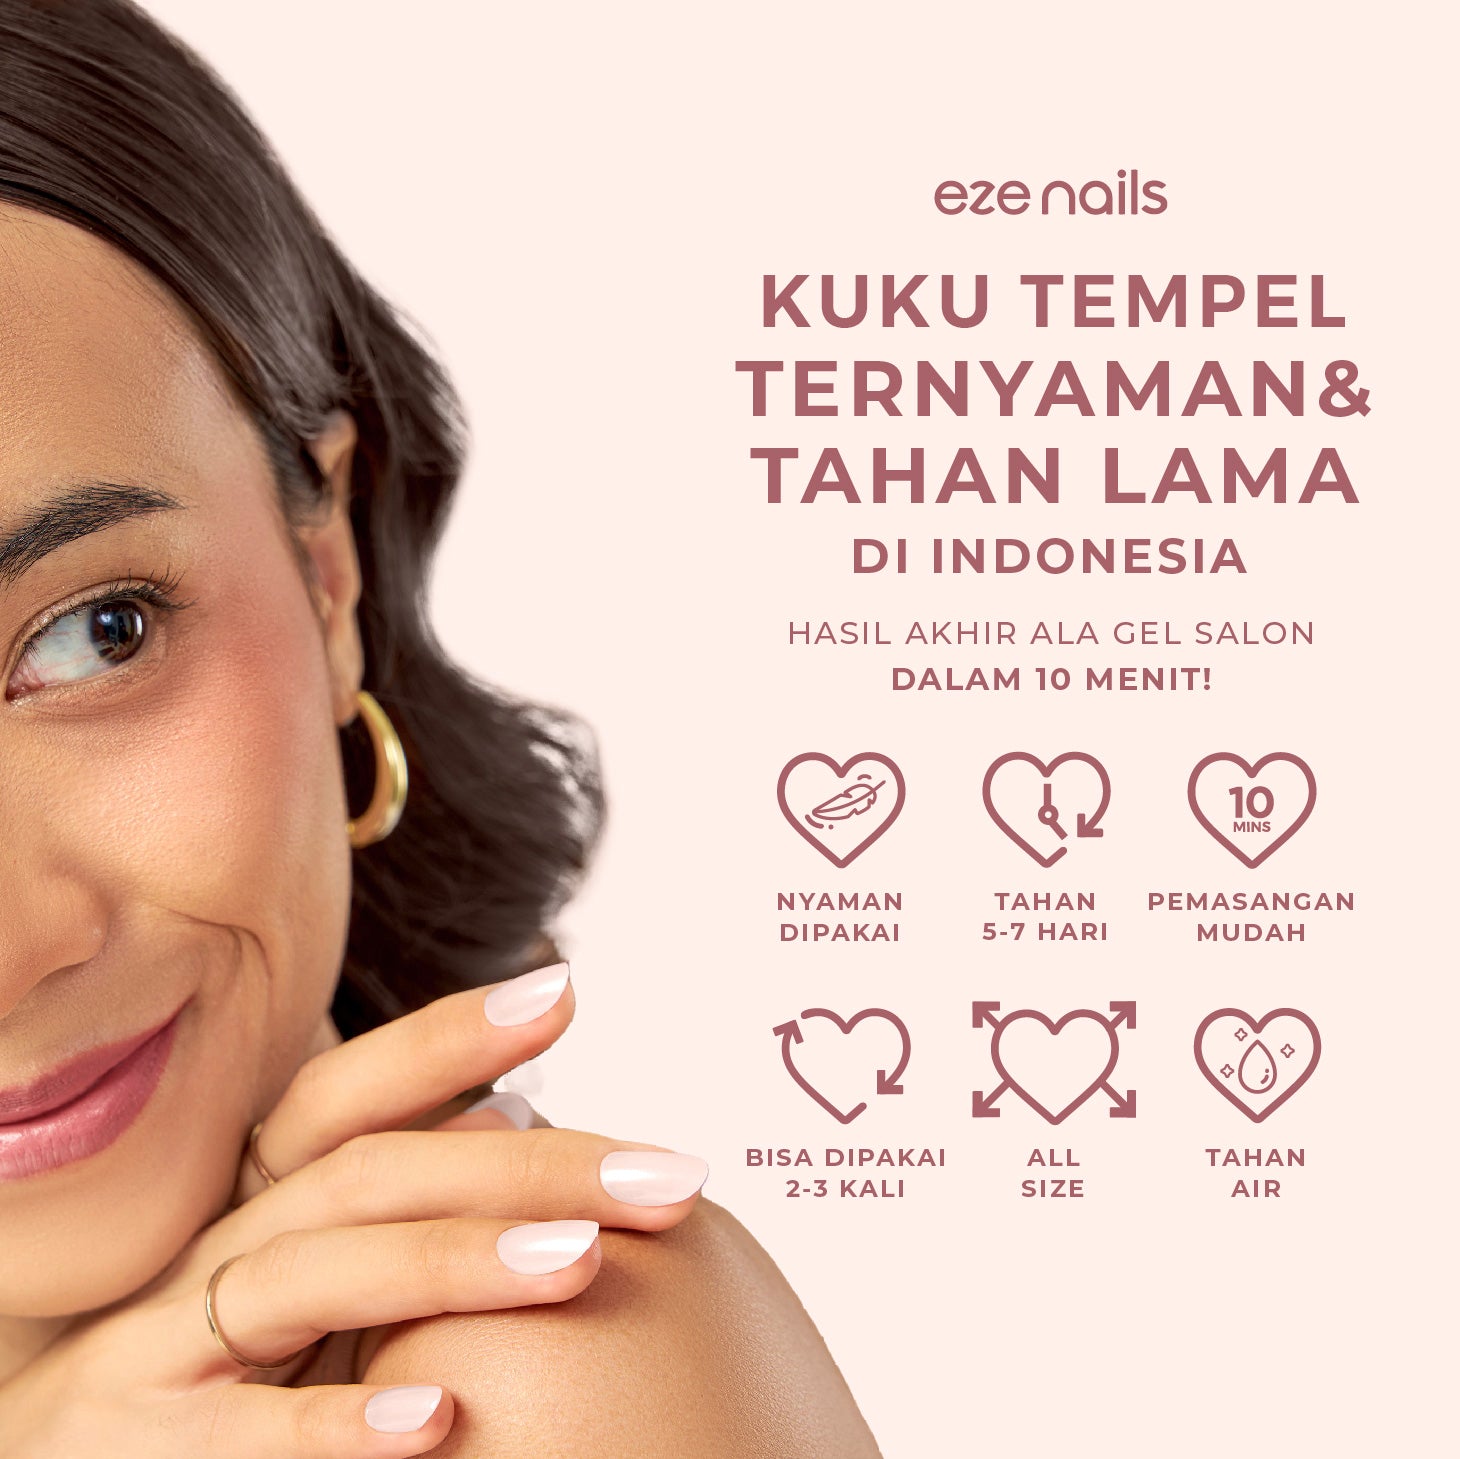 Kue Mangkok - Eze Nails Spot On Manicure (Kuku Palsu Tempel)